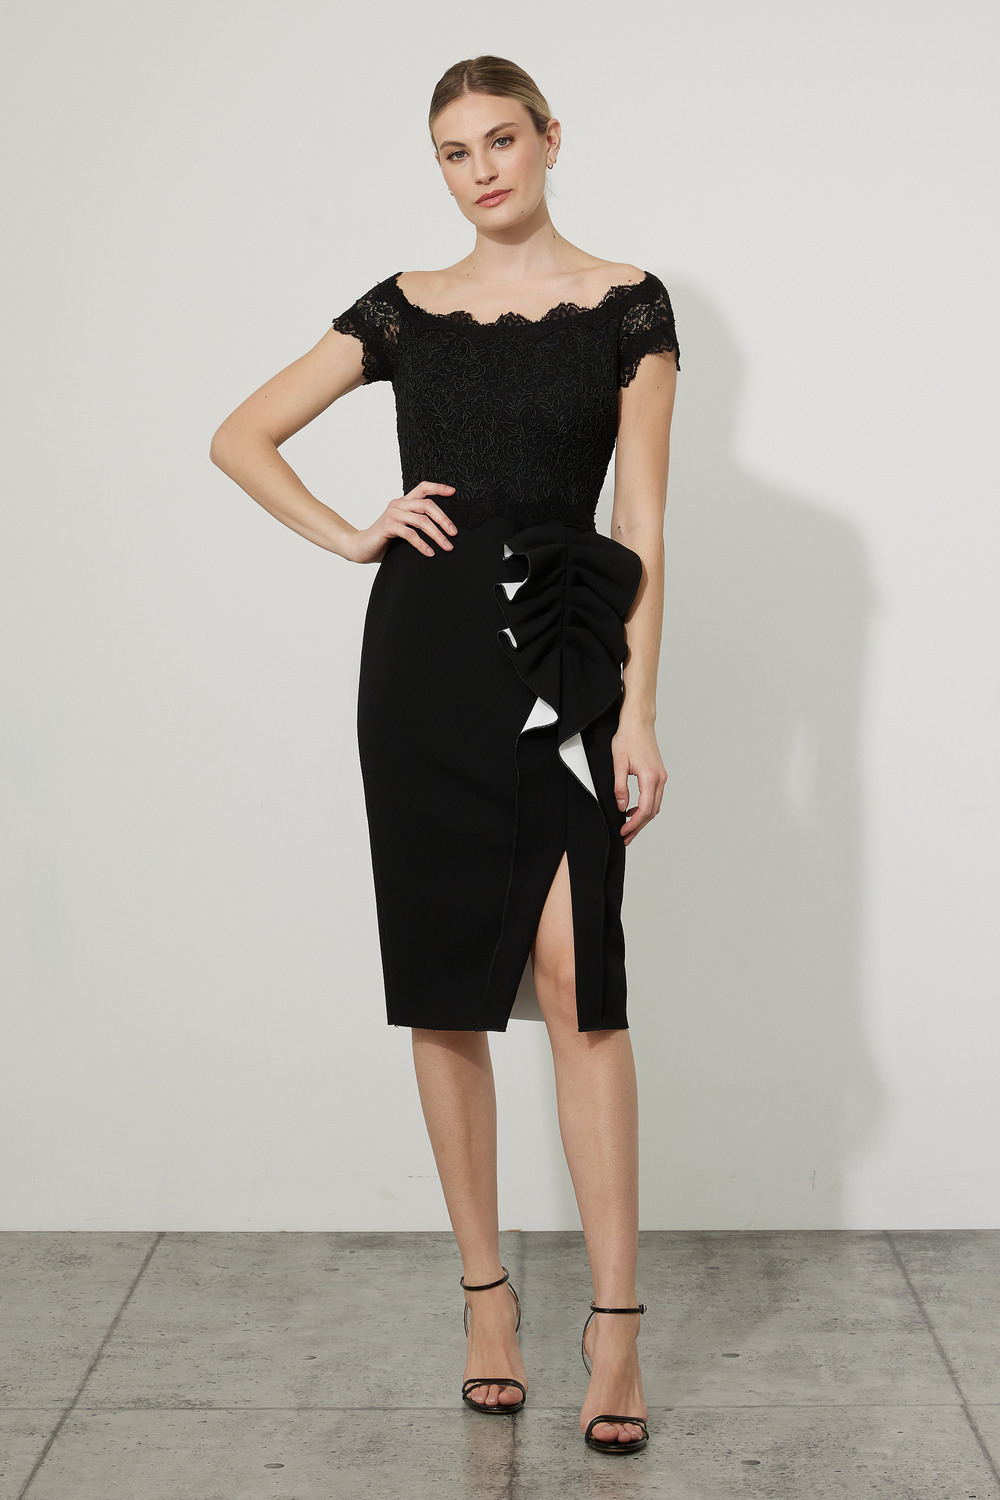 Joseph Ribkoff Ruffle & Lace Dress Style 223701. Black/vanilla